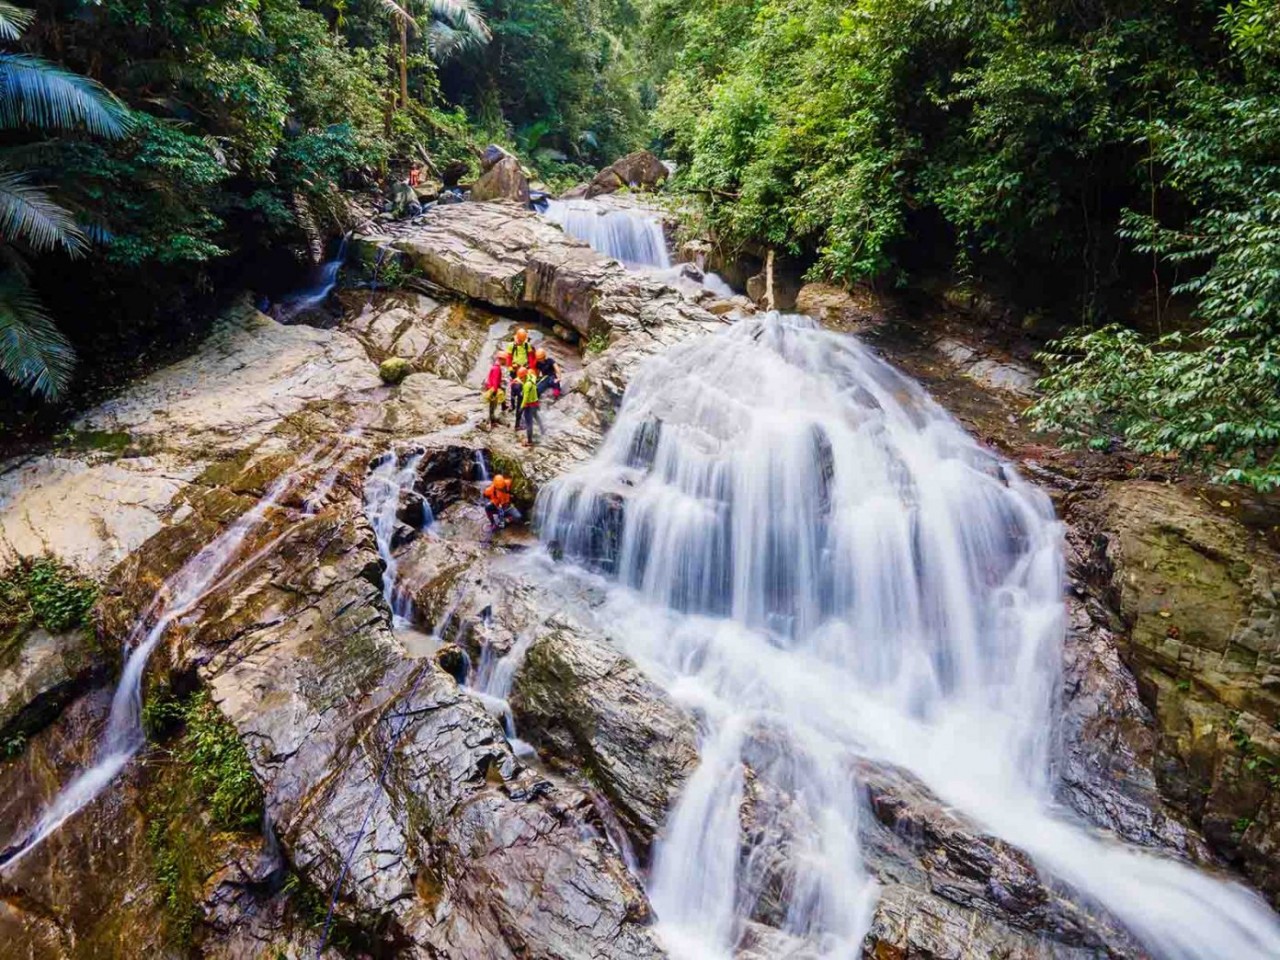 The majestic beauty of Duong Cam waterfall. Photo: Netin